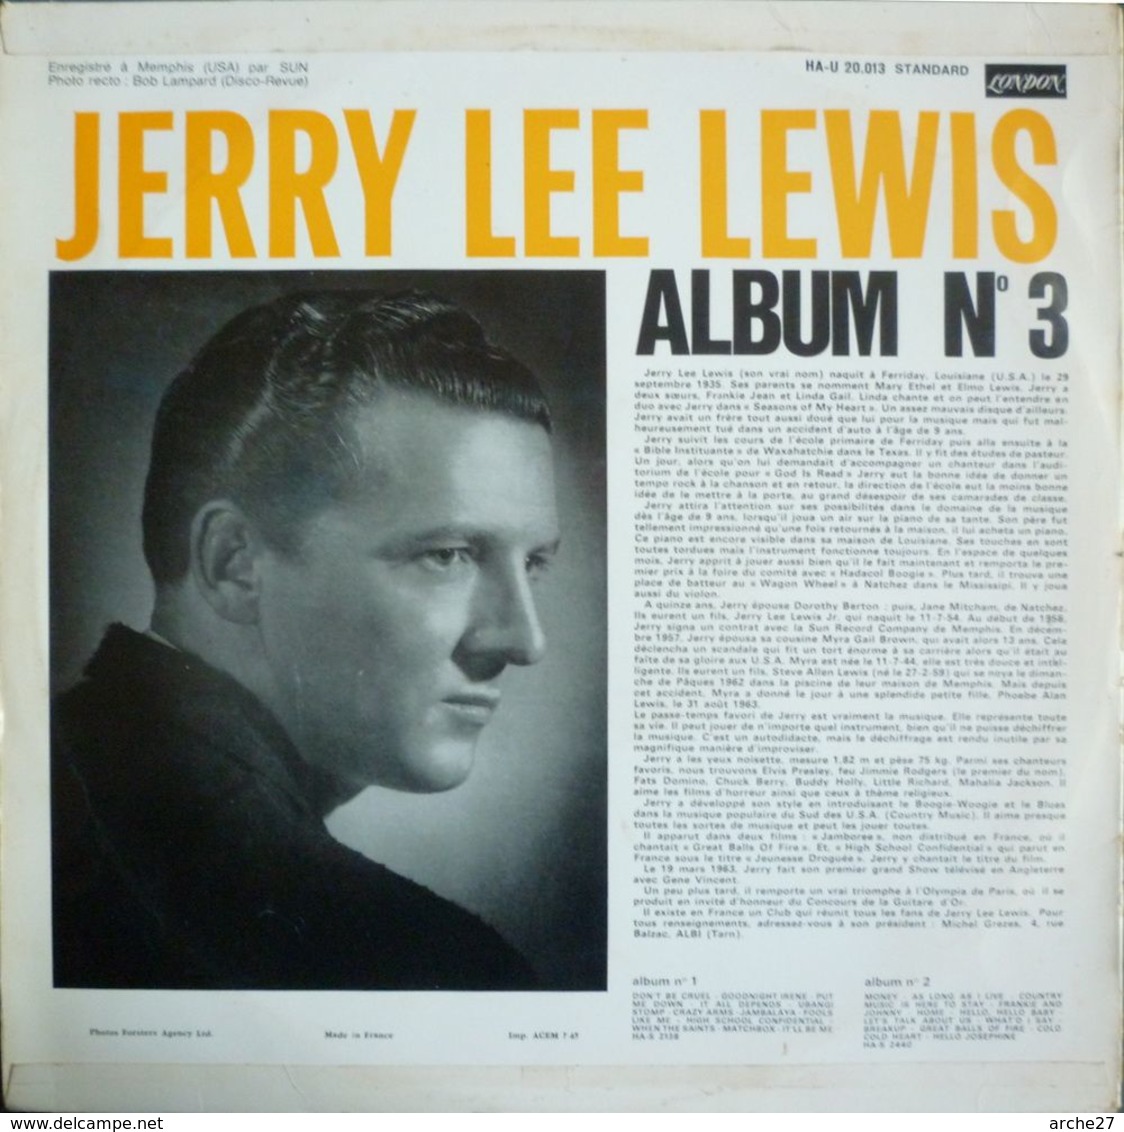 JERRY LEE LEWIS - LP - 33T - Disque Vinyle - Album N°3 - HA U 20013 - Rock